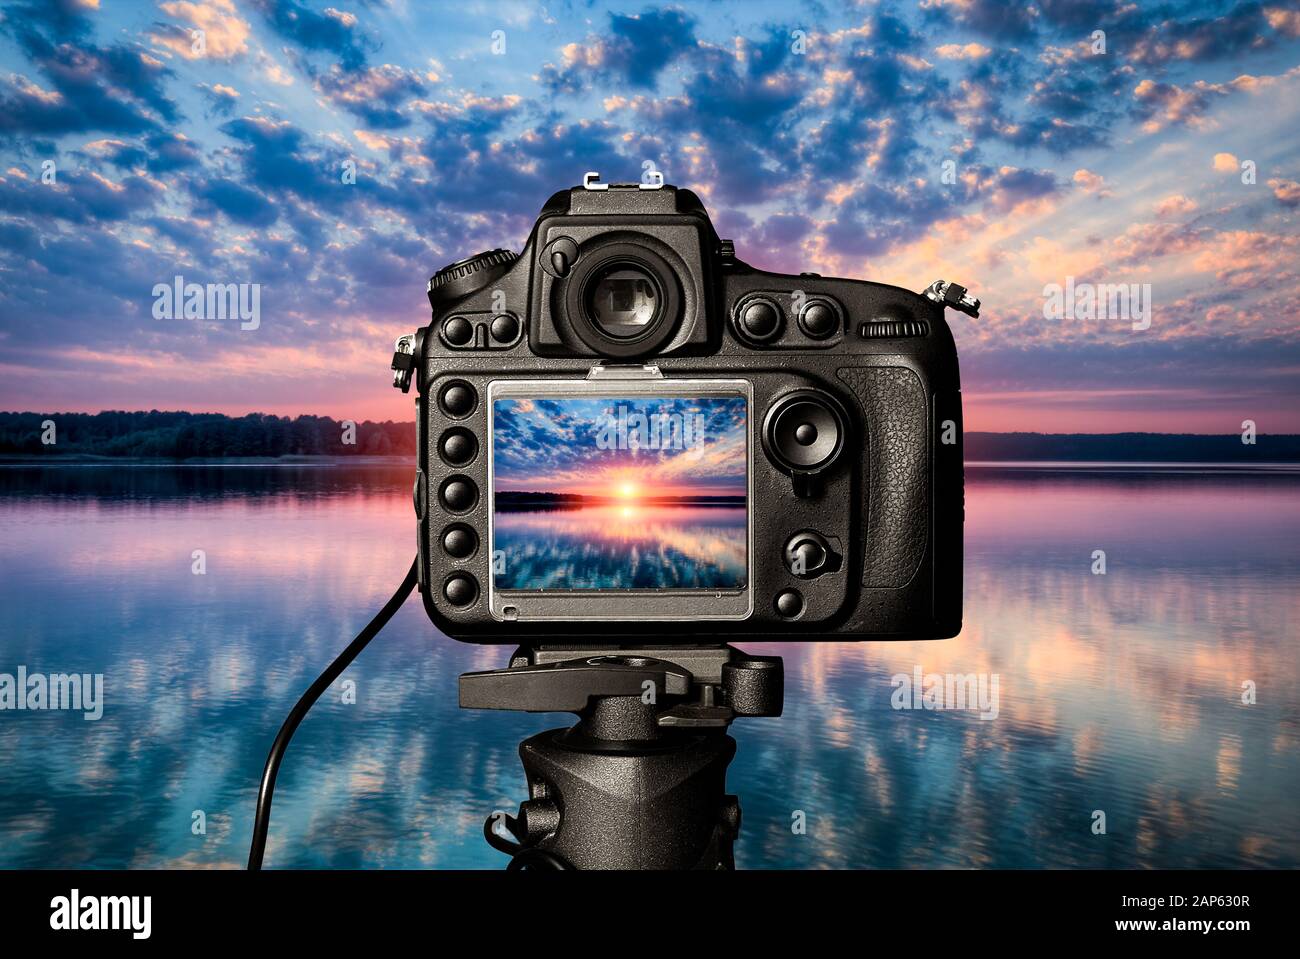 Voir l'objectif de l'appareil photo photographie Photographe photo vidéo lense verre numérique focus trouble couleur photographique des paysages de l'eau du lac au coucher du soleil concept vacatio Banque D'Images